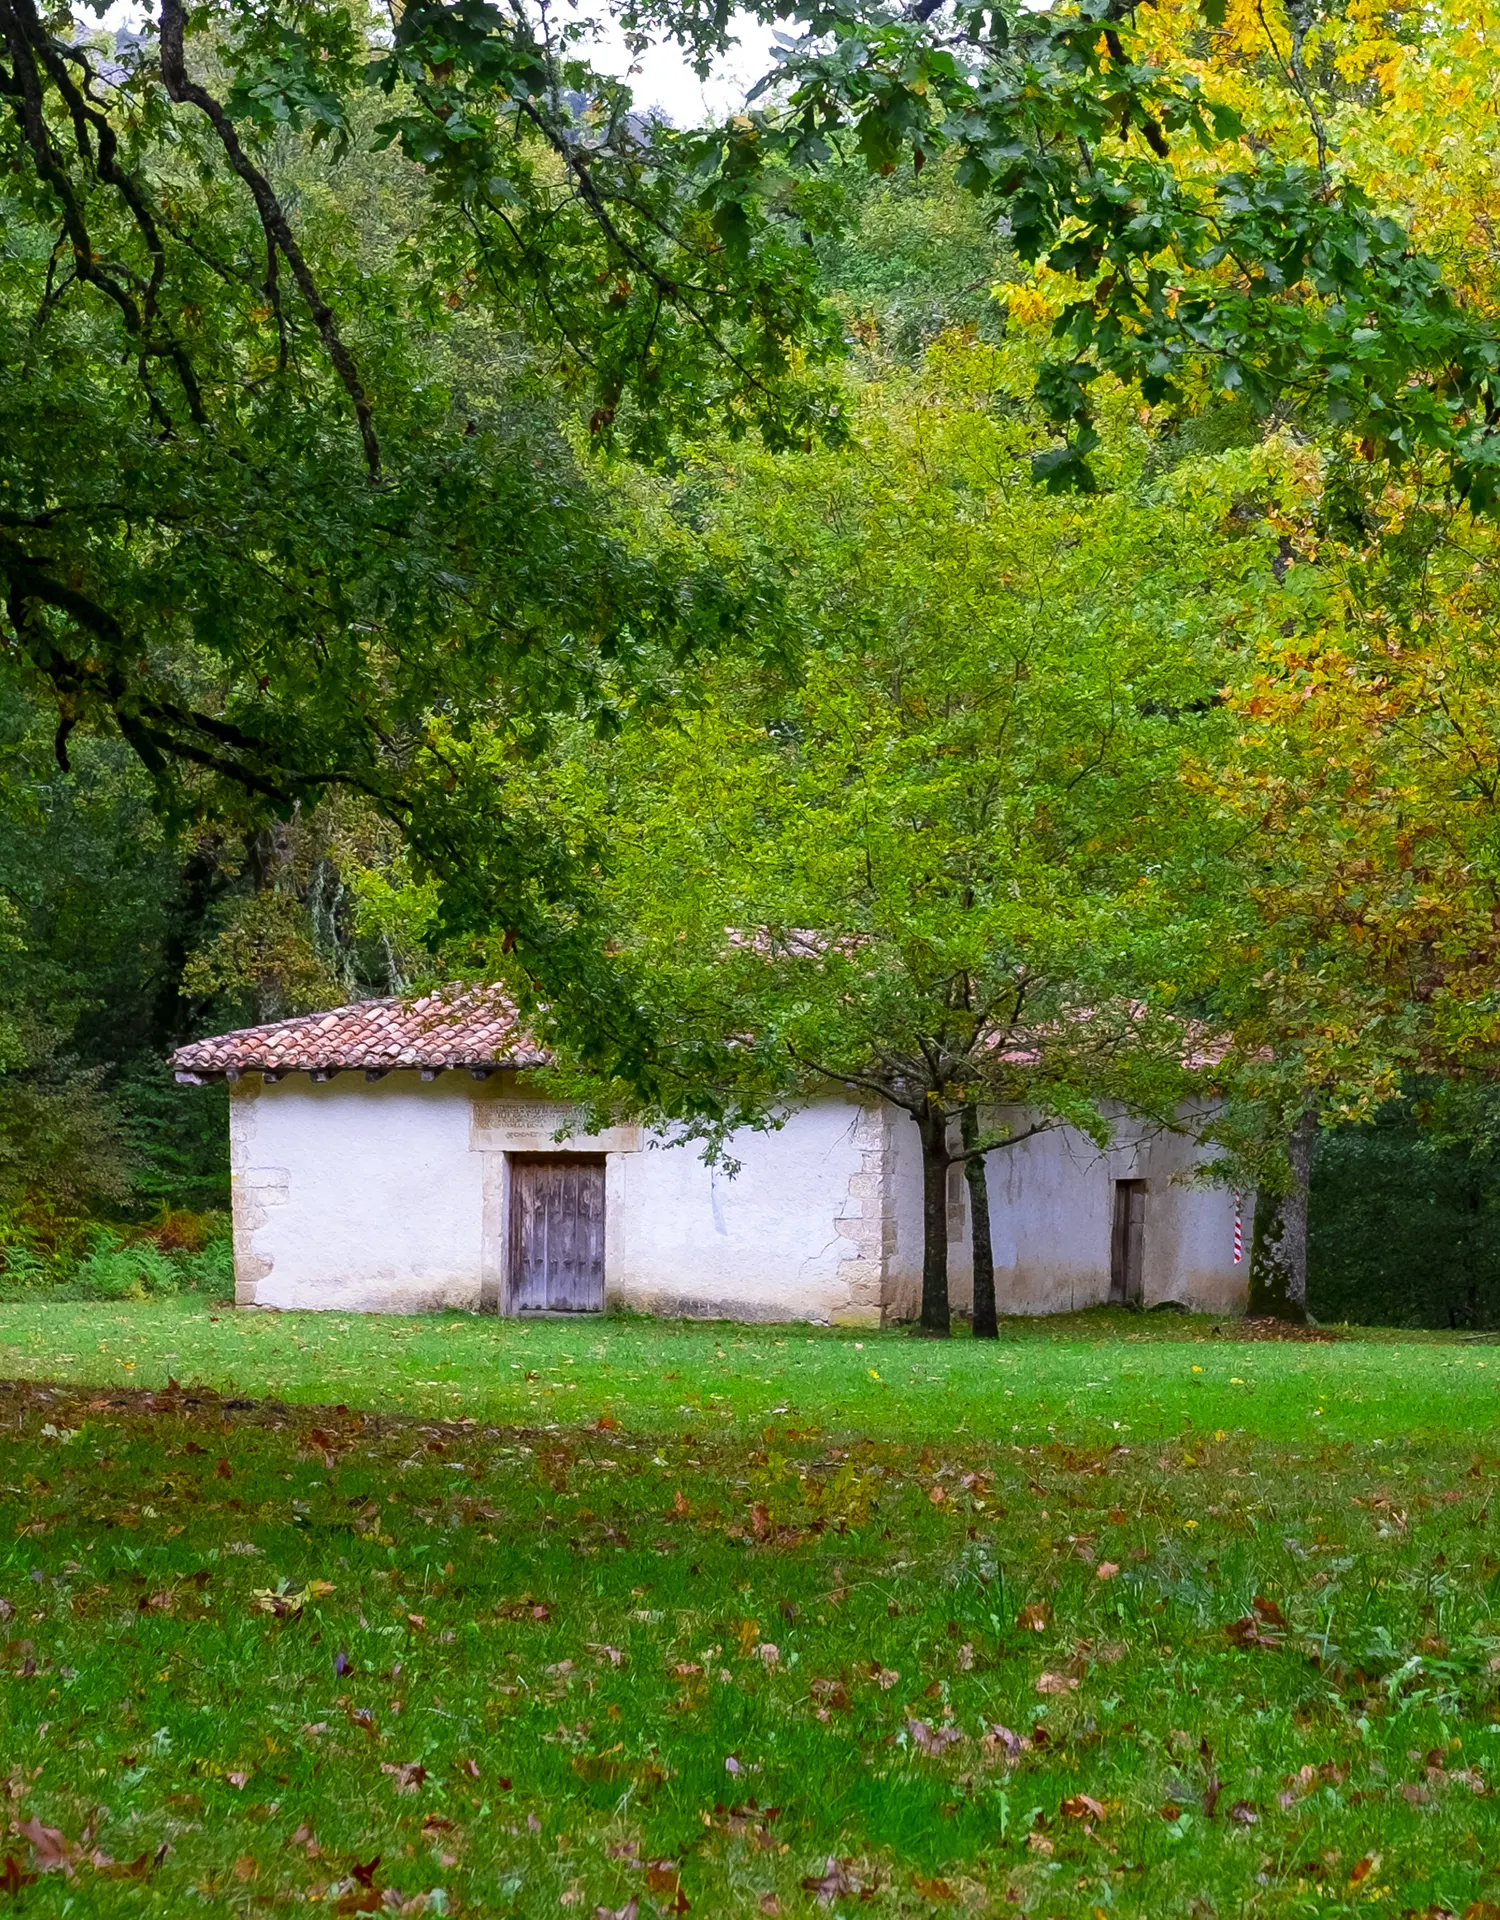 Cabaña en bosque de Urbasa en Navarra